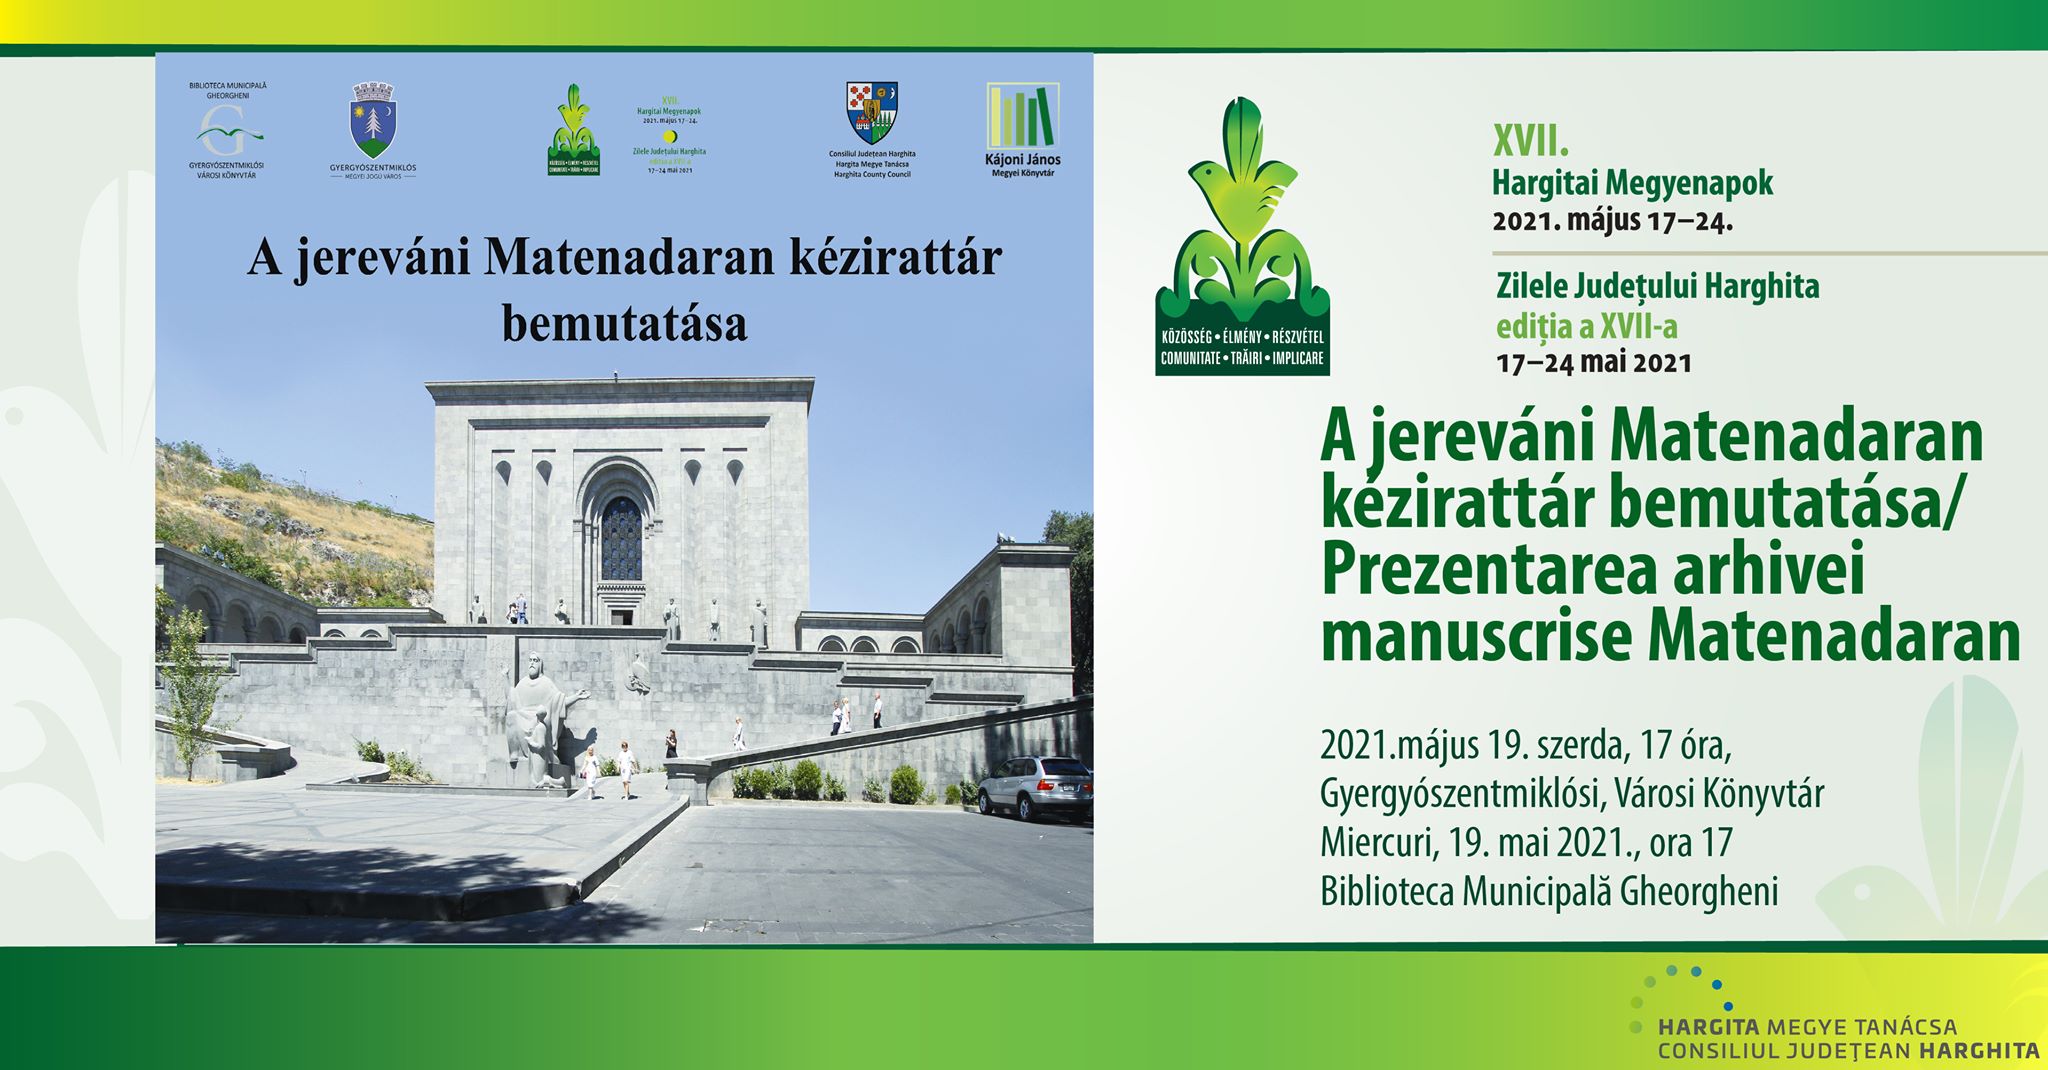 A jereváni Matenadaran kézirattár bemutatása – a Gyergyószentmiklósi Városi Könyvtár rendezvénye